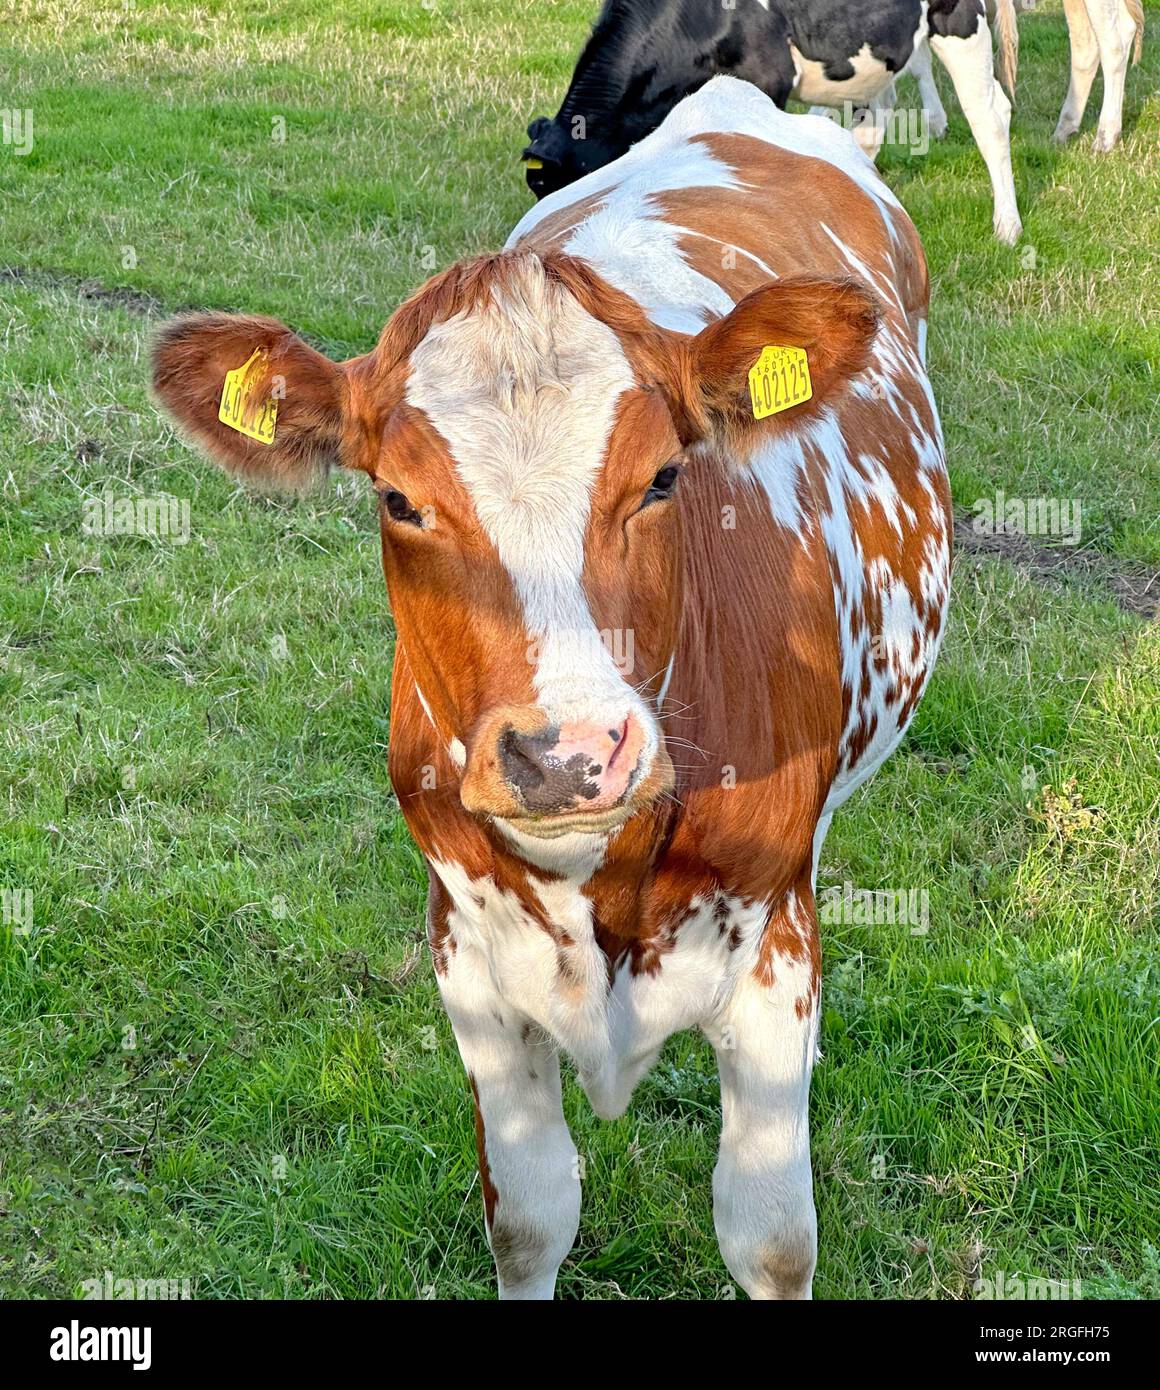 Vache de veau de bétail journal brun et blanc, étiqueté sur un fermier, champ, Hatton, Cheshire, Angleterre, ROYAUME-UNI, WA4 4DA Banque D'Images